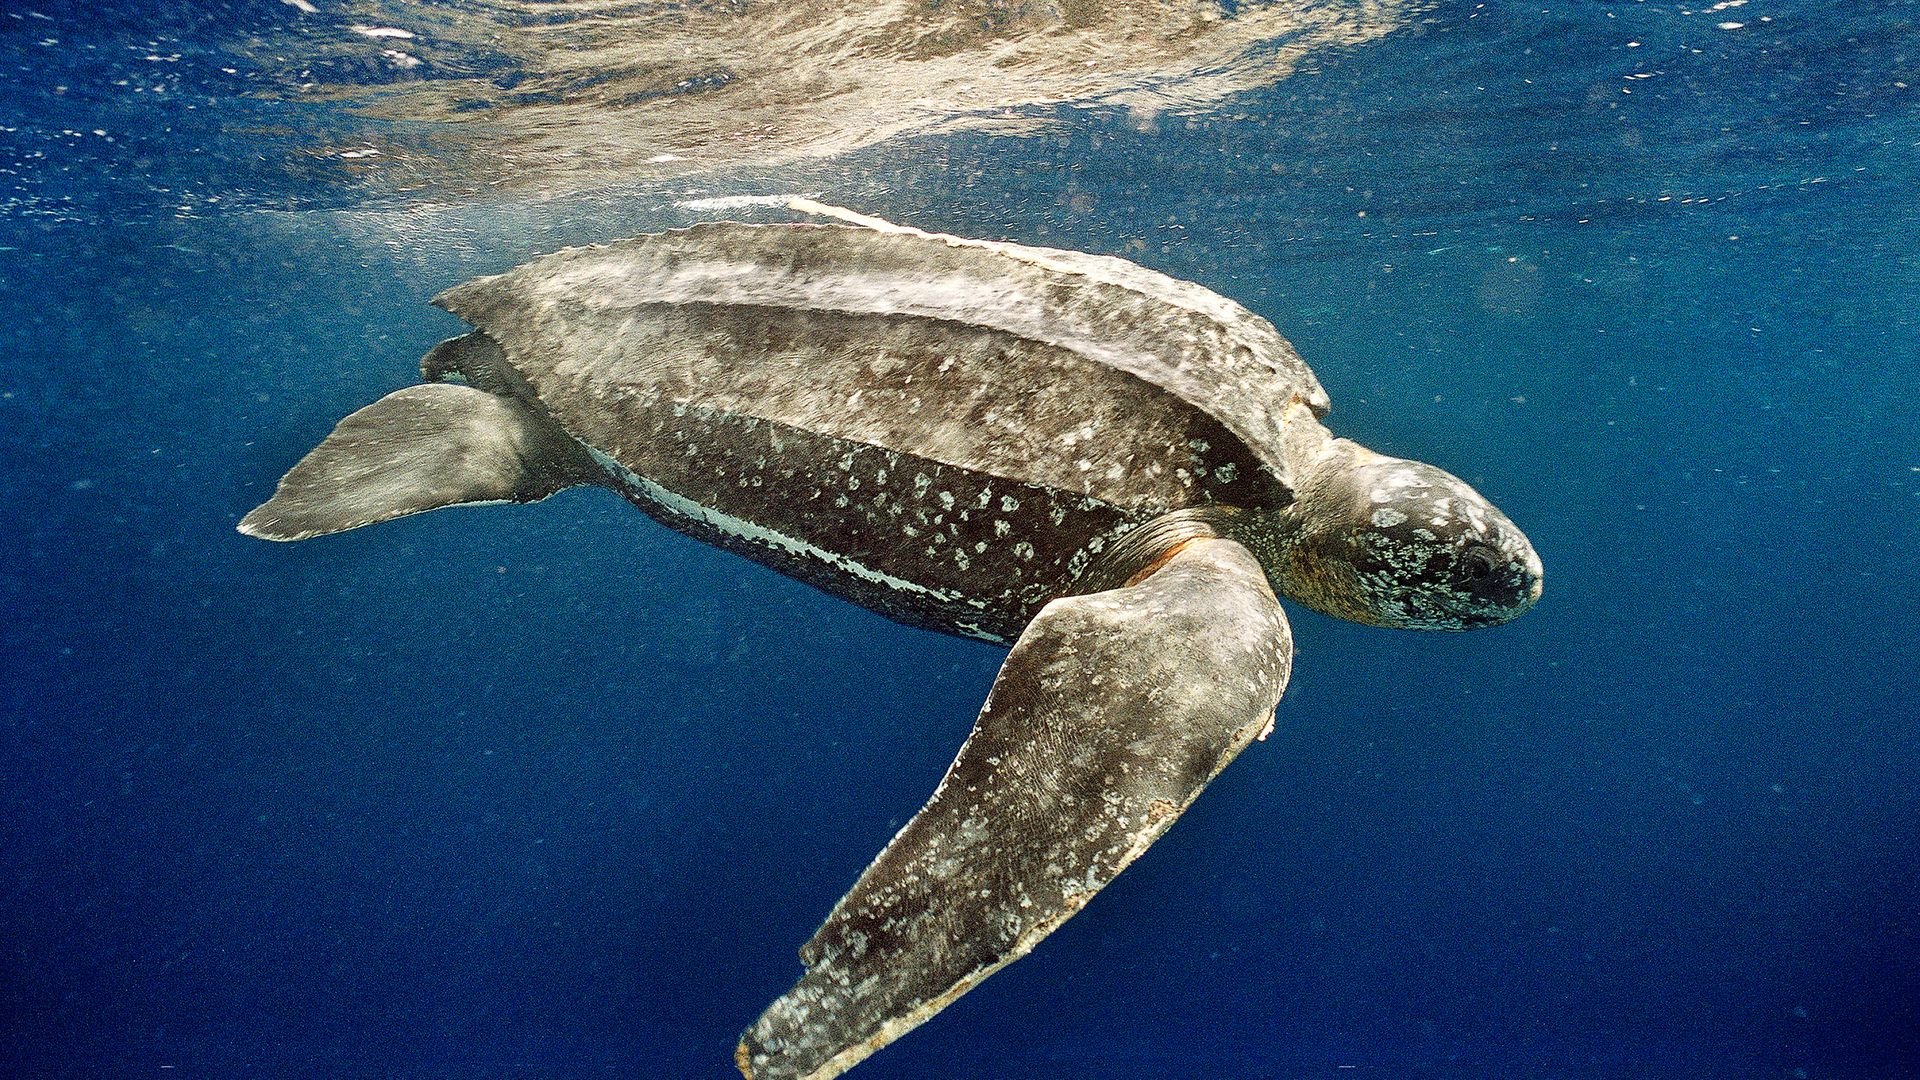 Em média, a tartaruga-de-couro (Dermochelys coriacea) tem entre 1,60 m e 1,70 m de comprimento